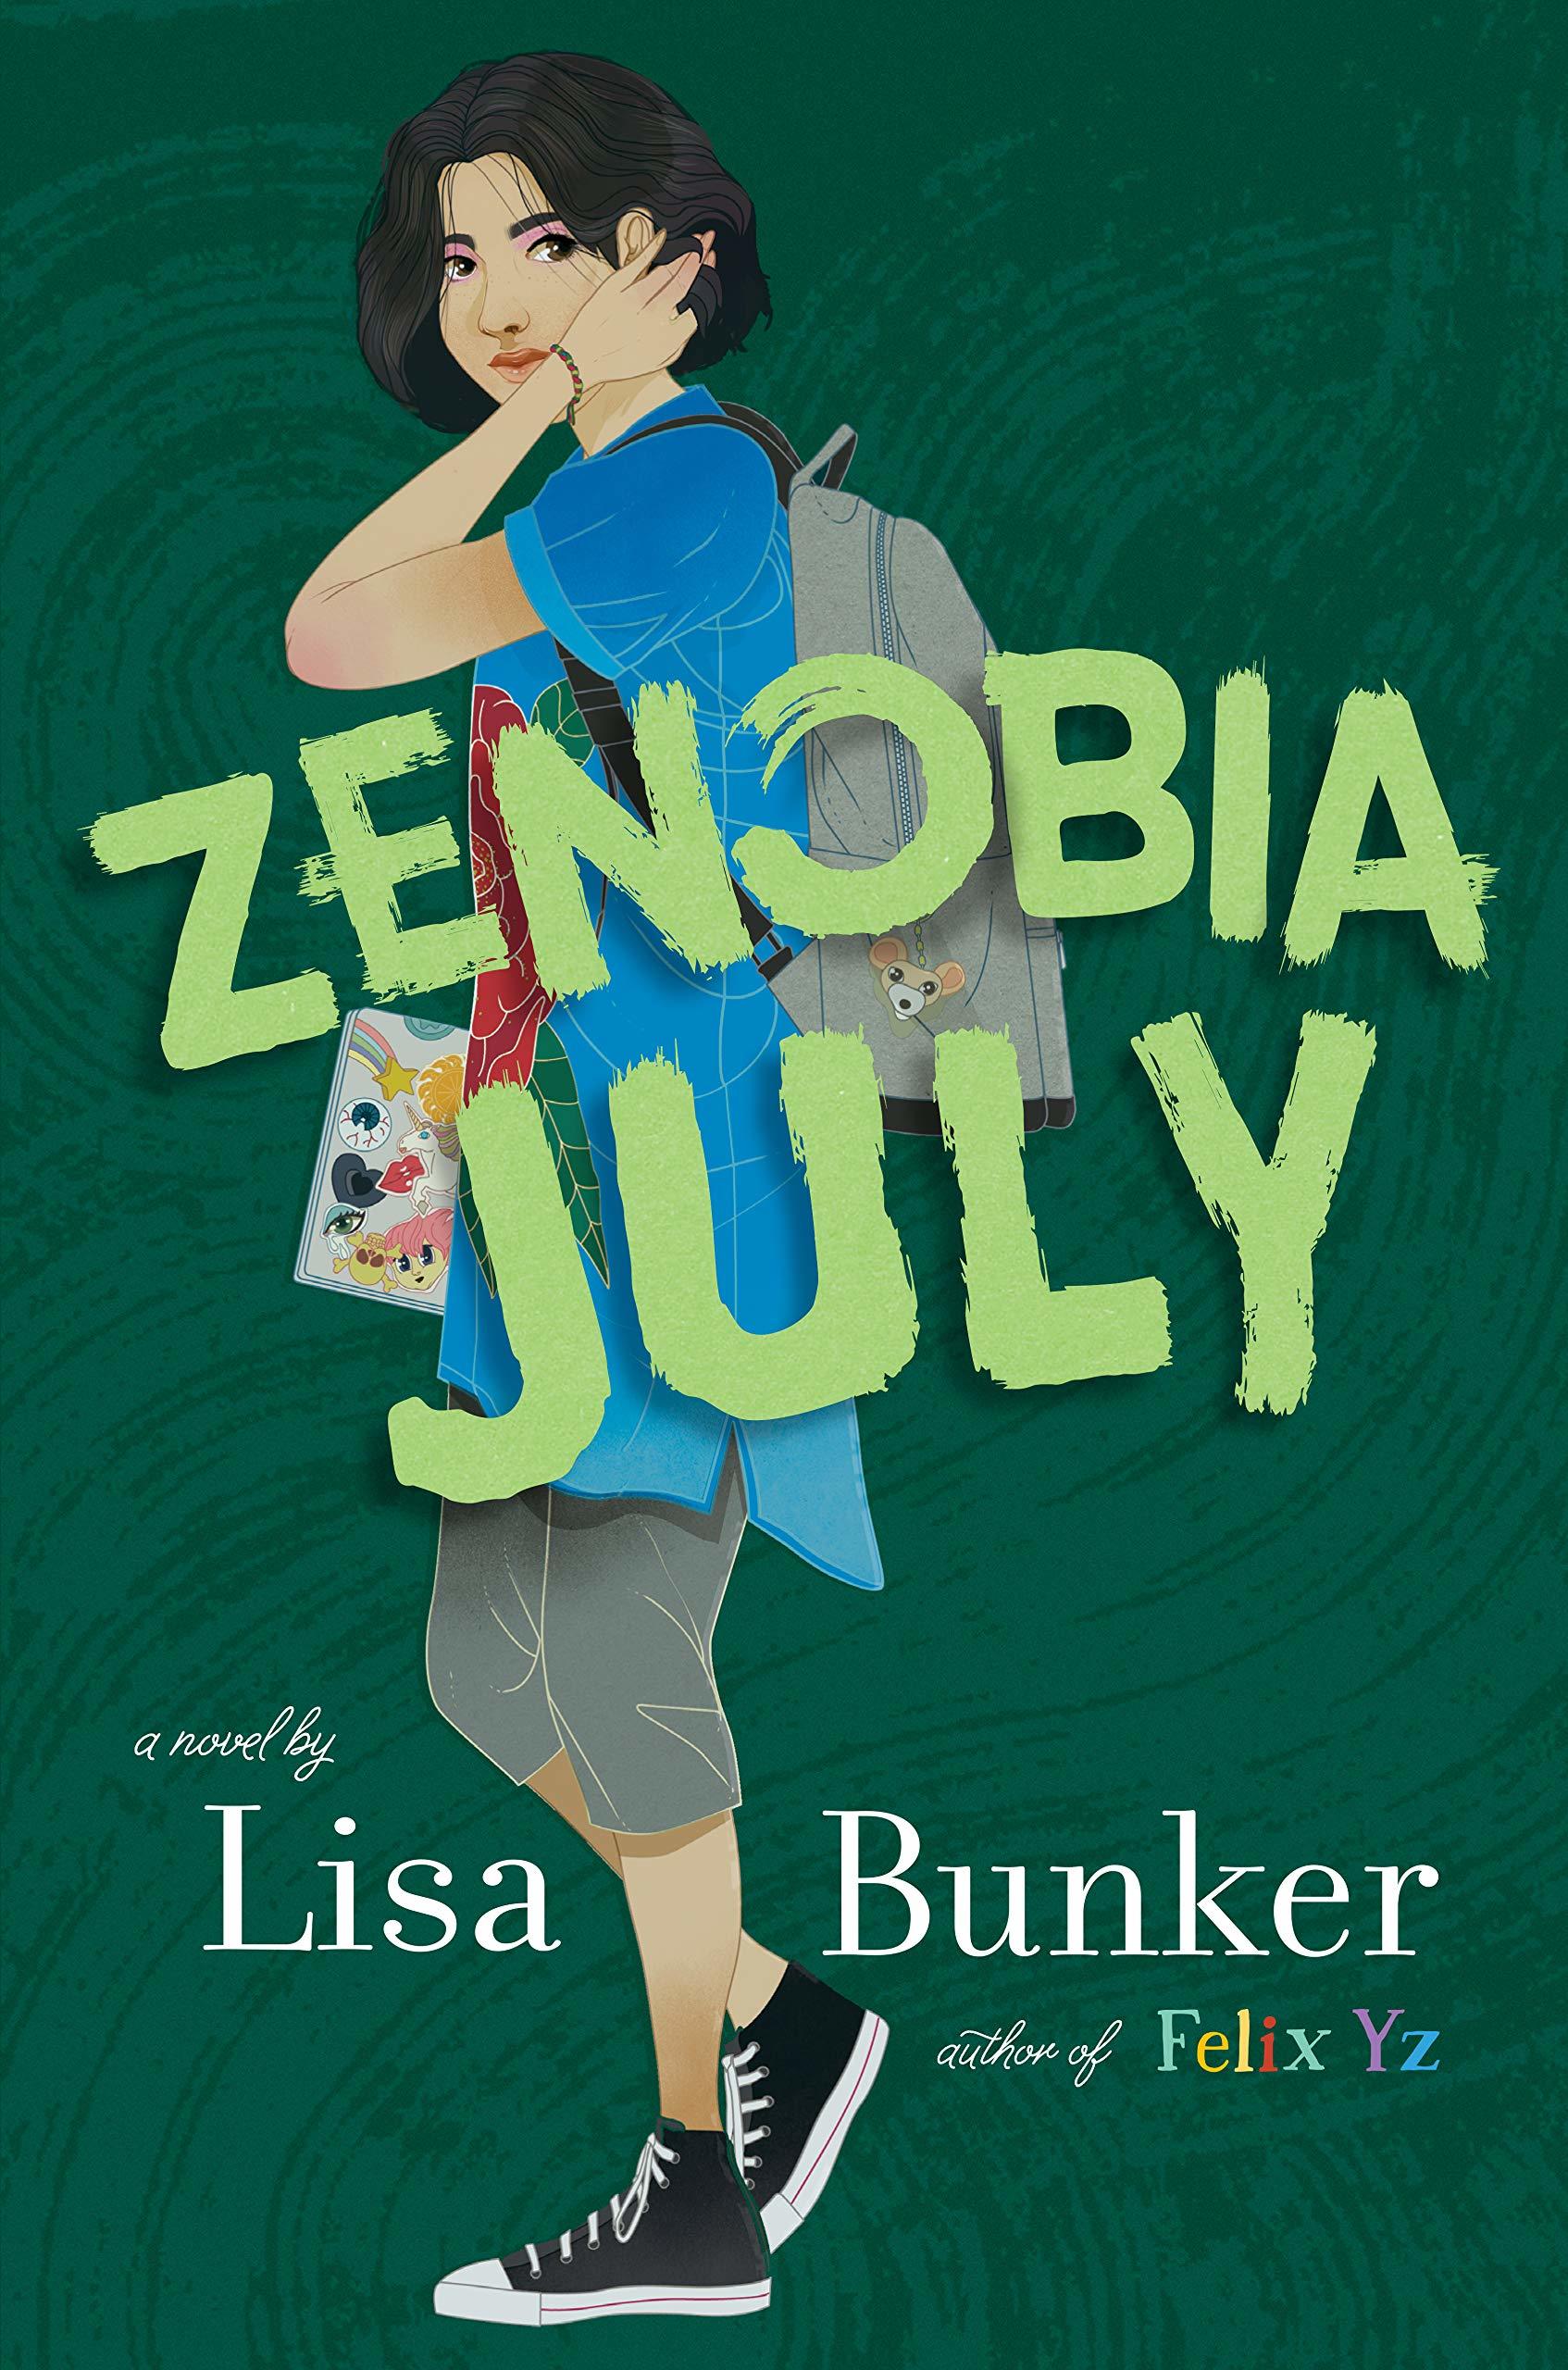 middle school books - Zenobia July by Lisa Bunker